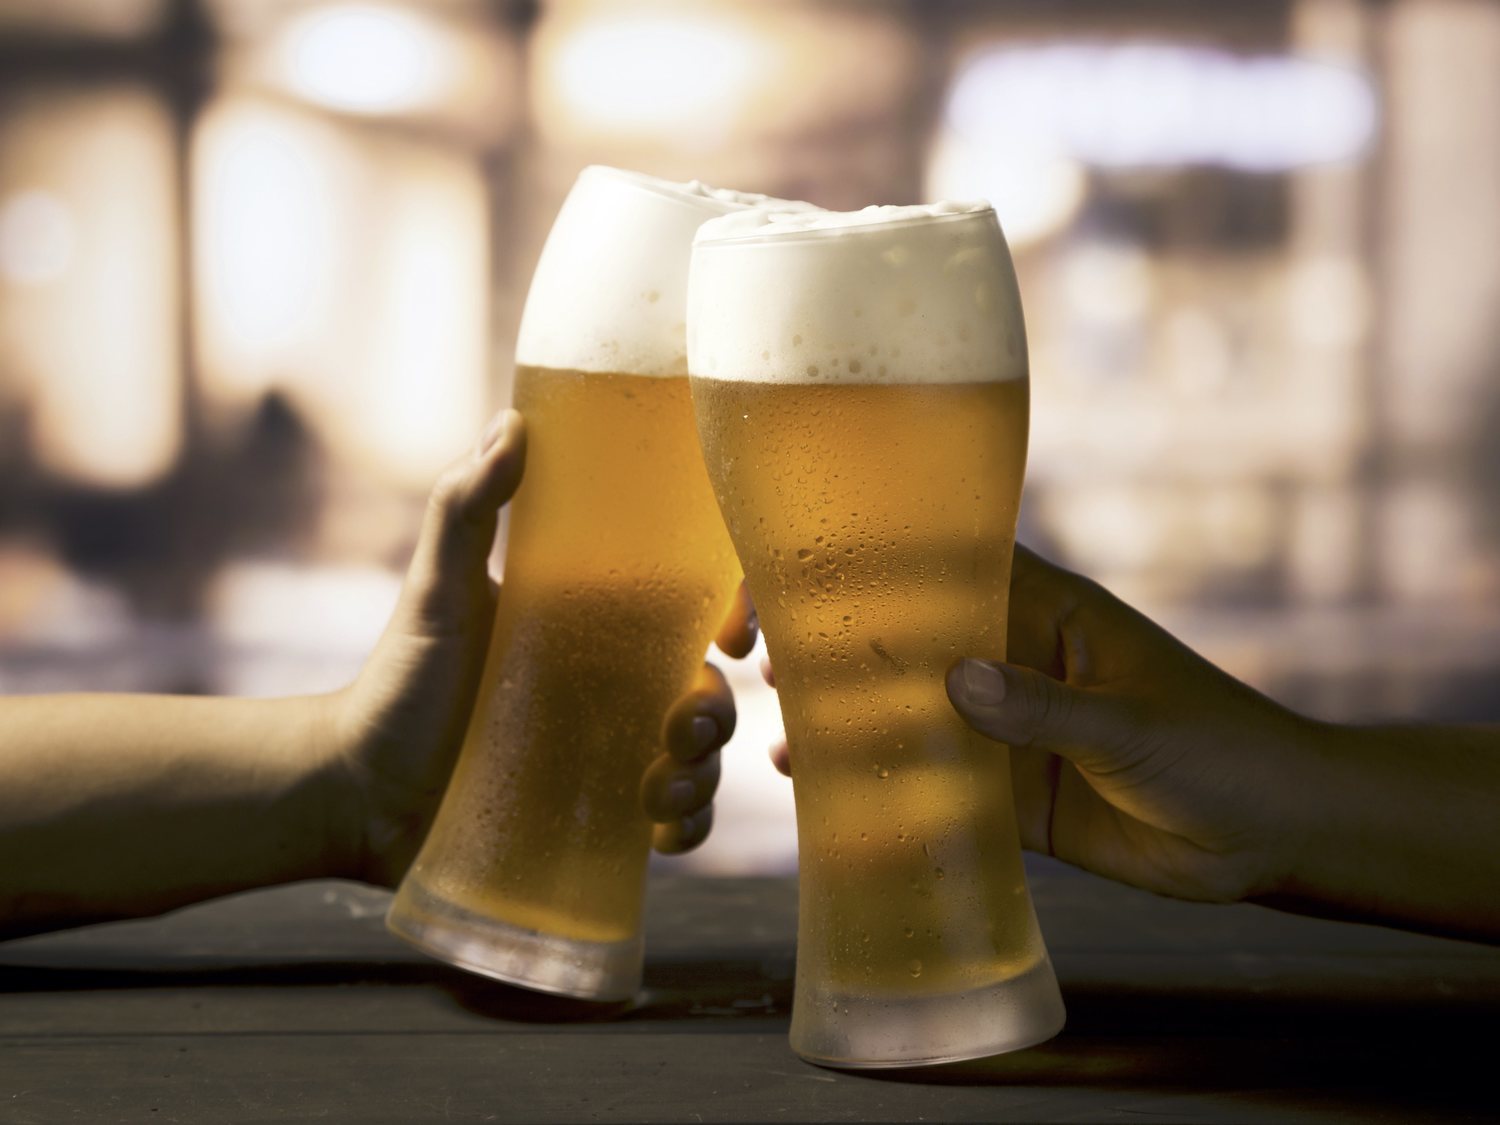 Un ranking internacional señala una cerveza española del supermercado como la mejor del mundo